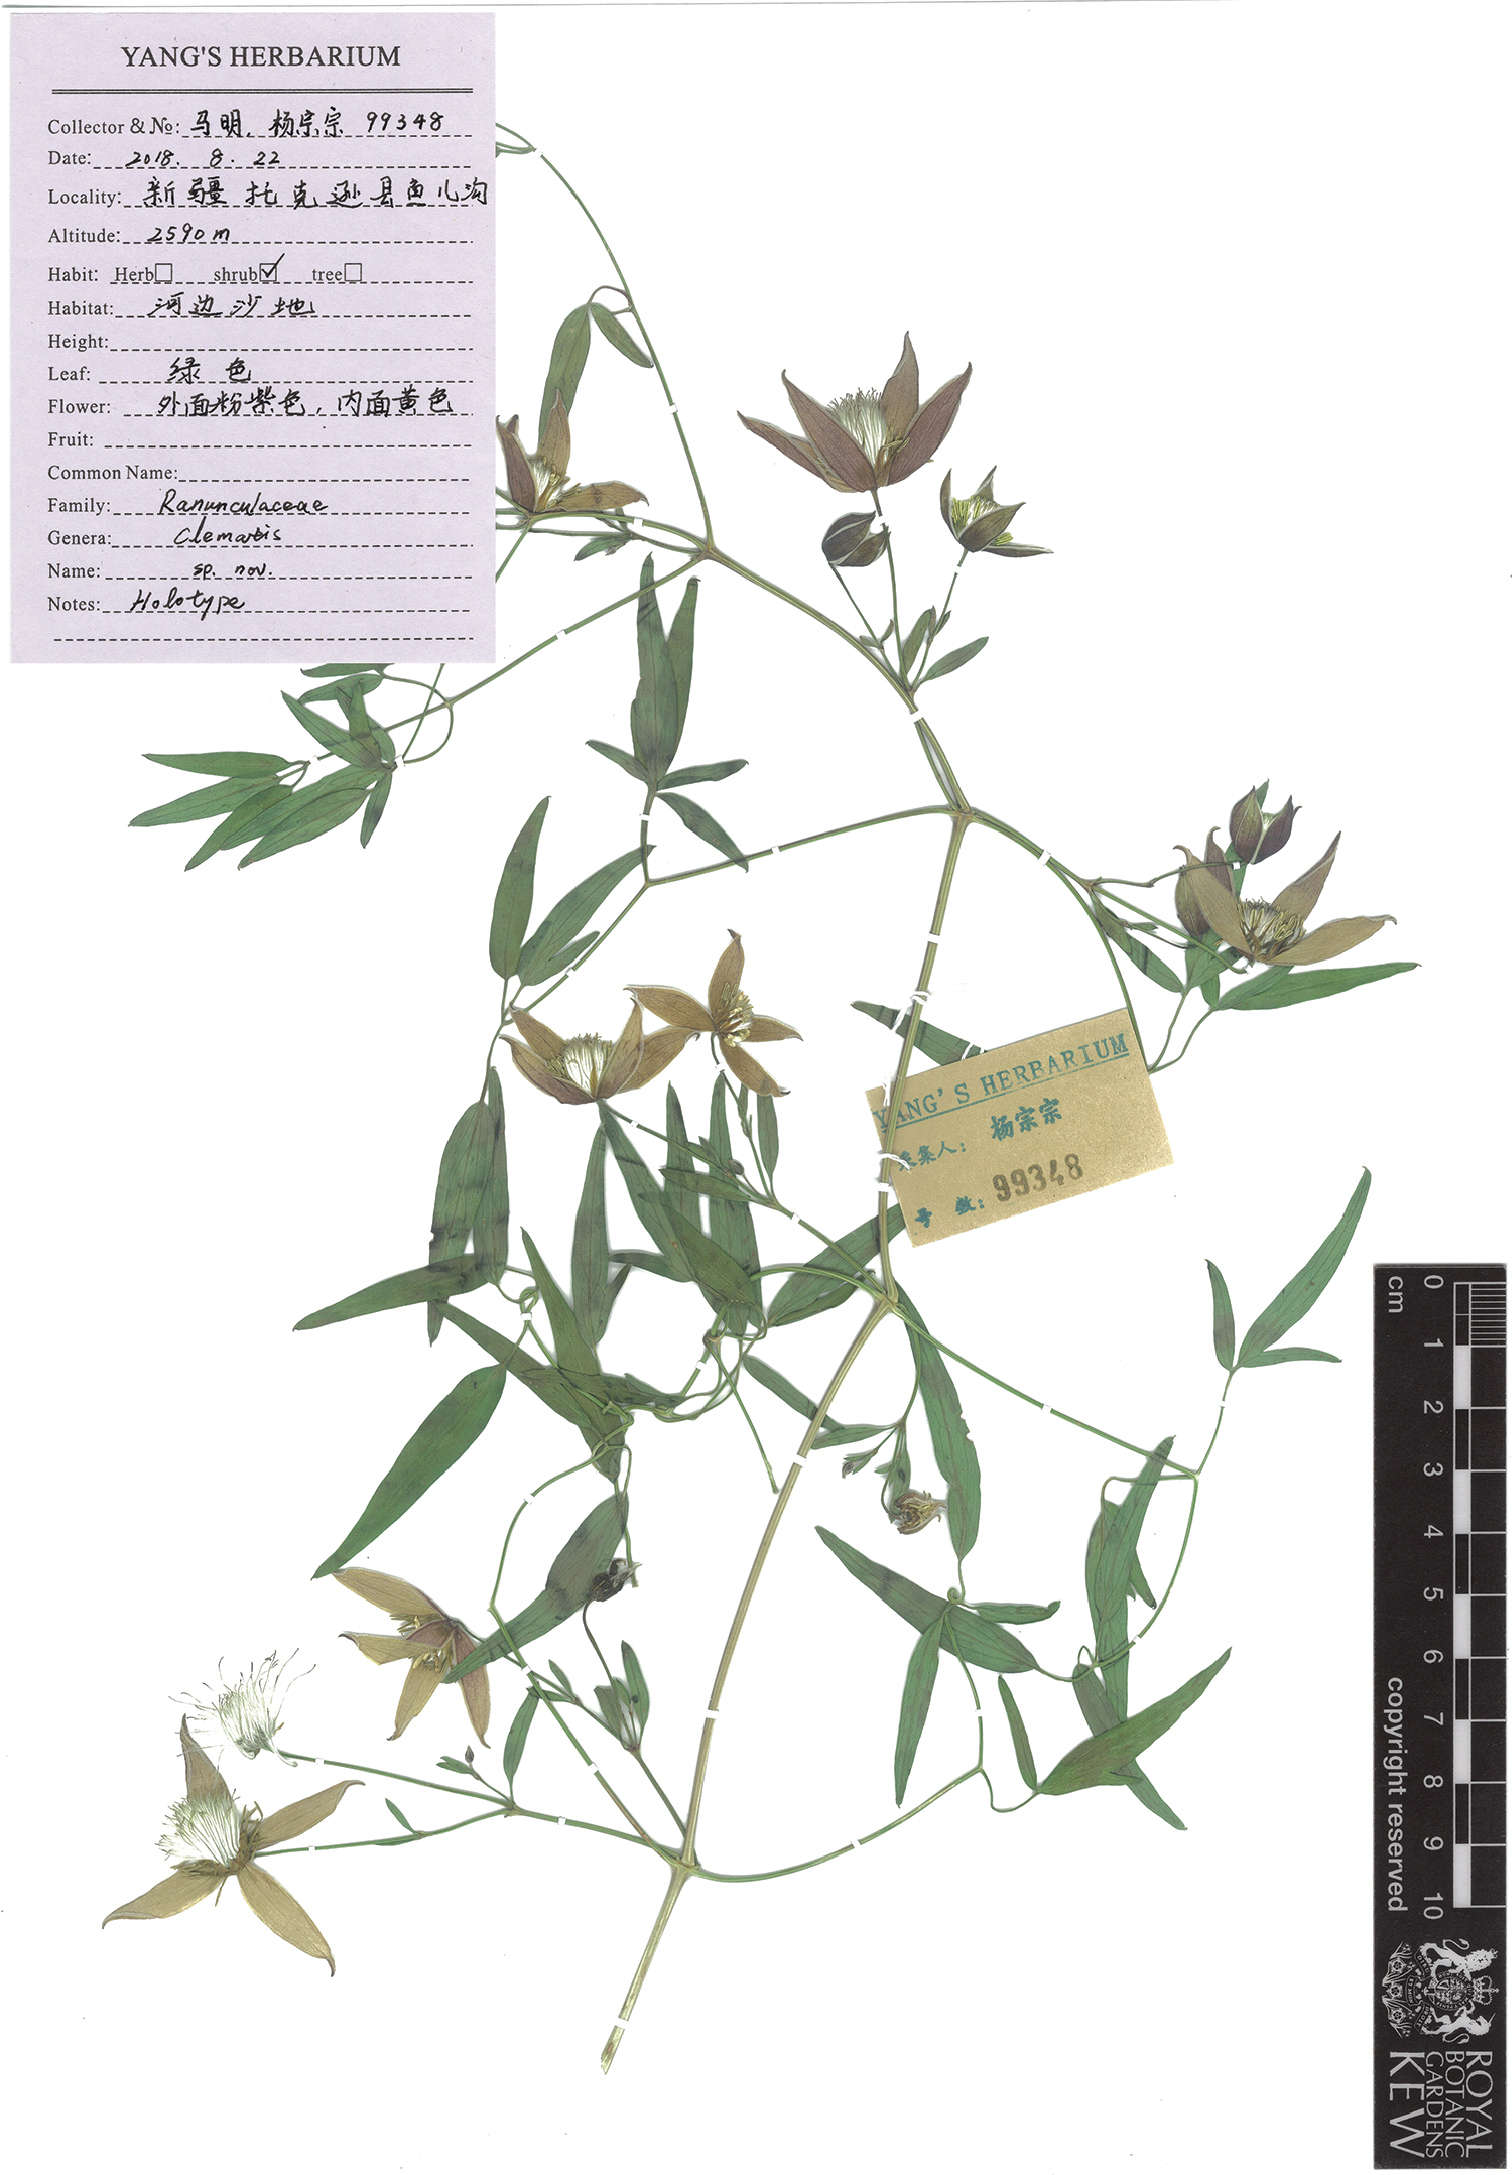 Ranunculaceae (rights holder: Jian He, Ru-Dan Lyu, Min Yao, Lei Xie, Zong-Zong Yang)